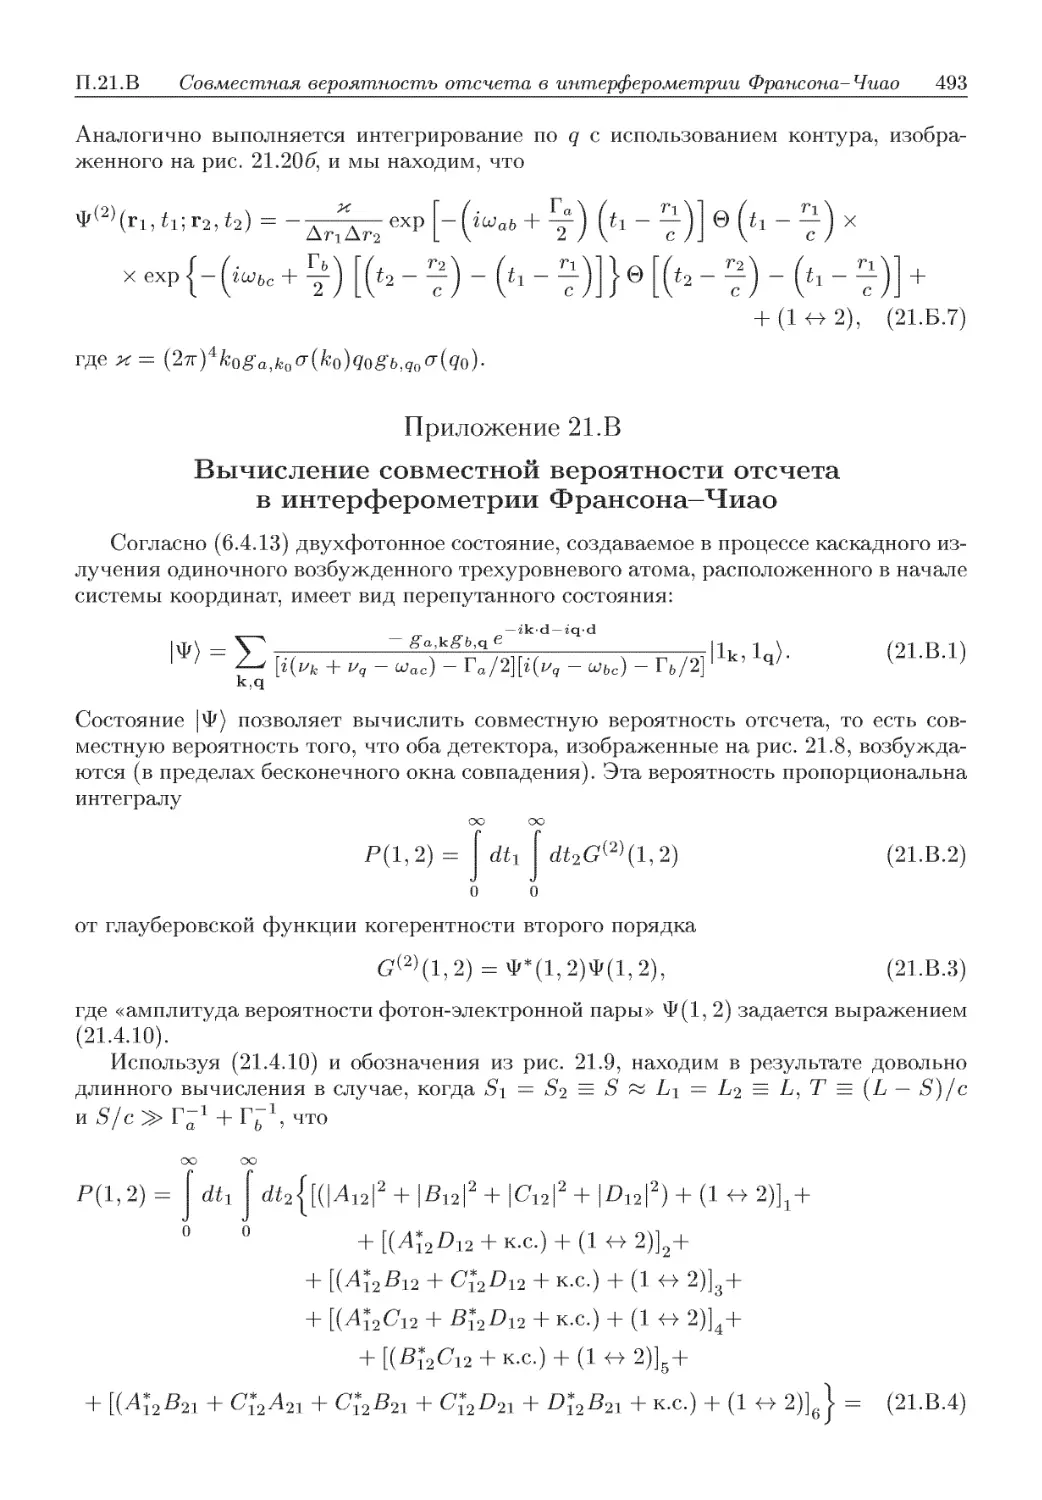 Приложение 21.В. Вычисление совместной вероятности отсчета в интерферометрии Франсона-Чиао